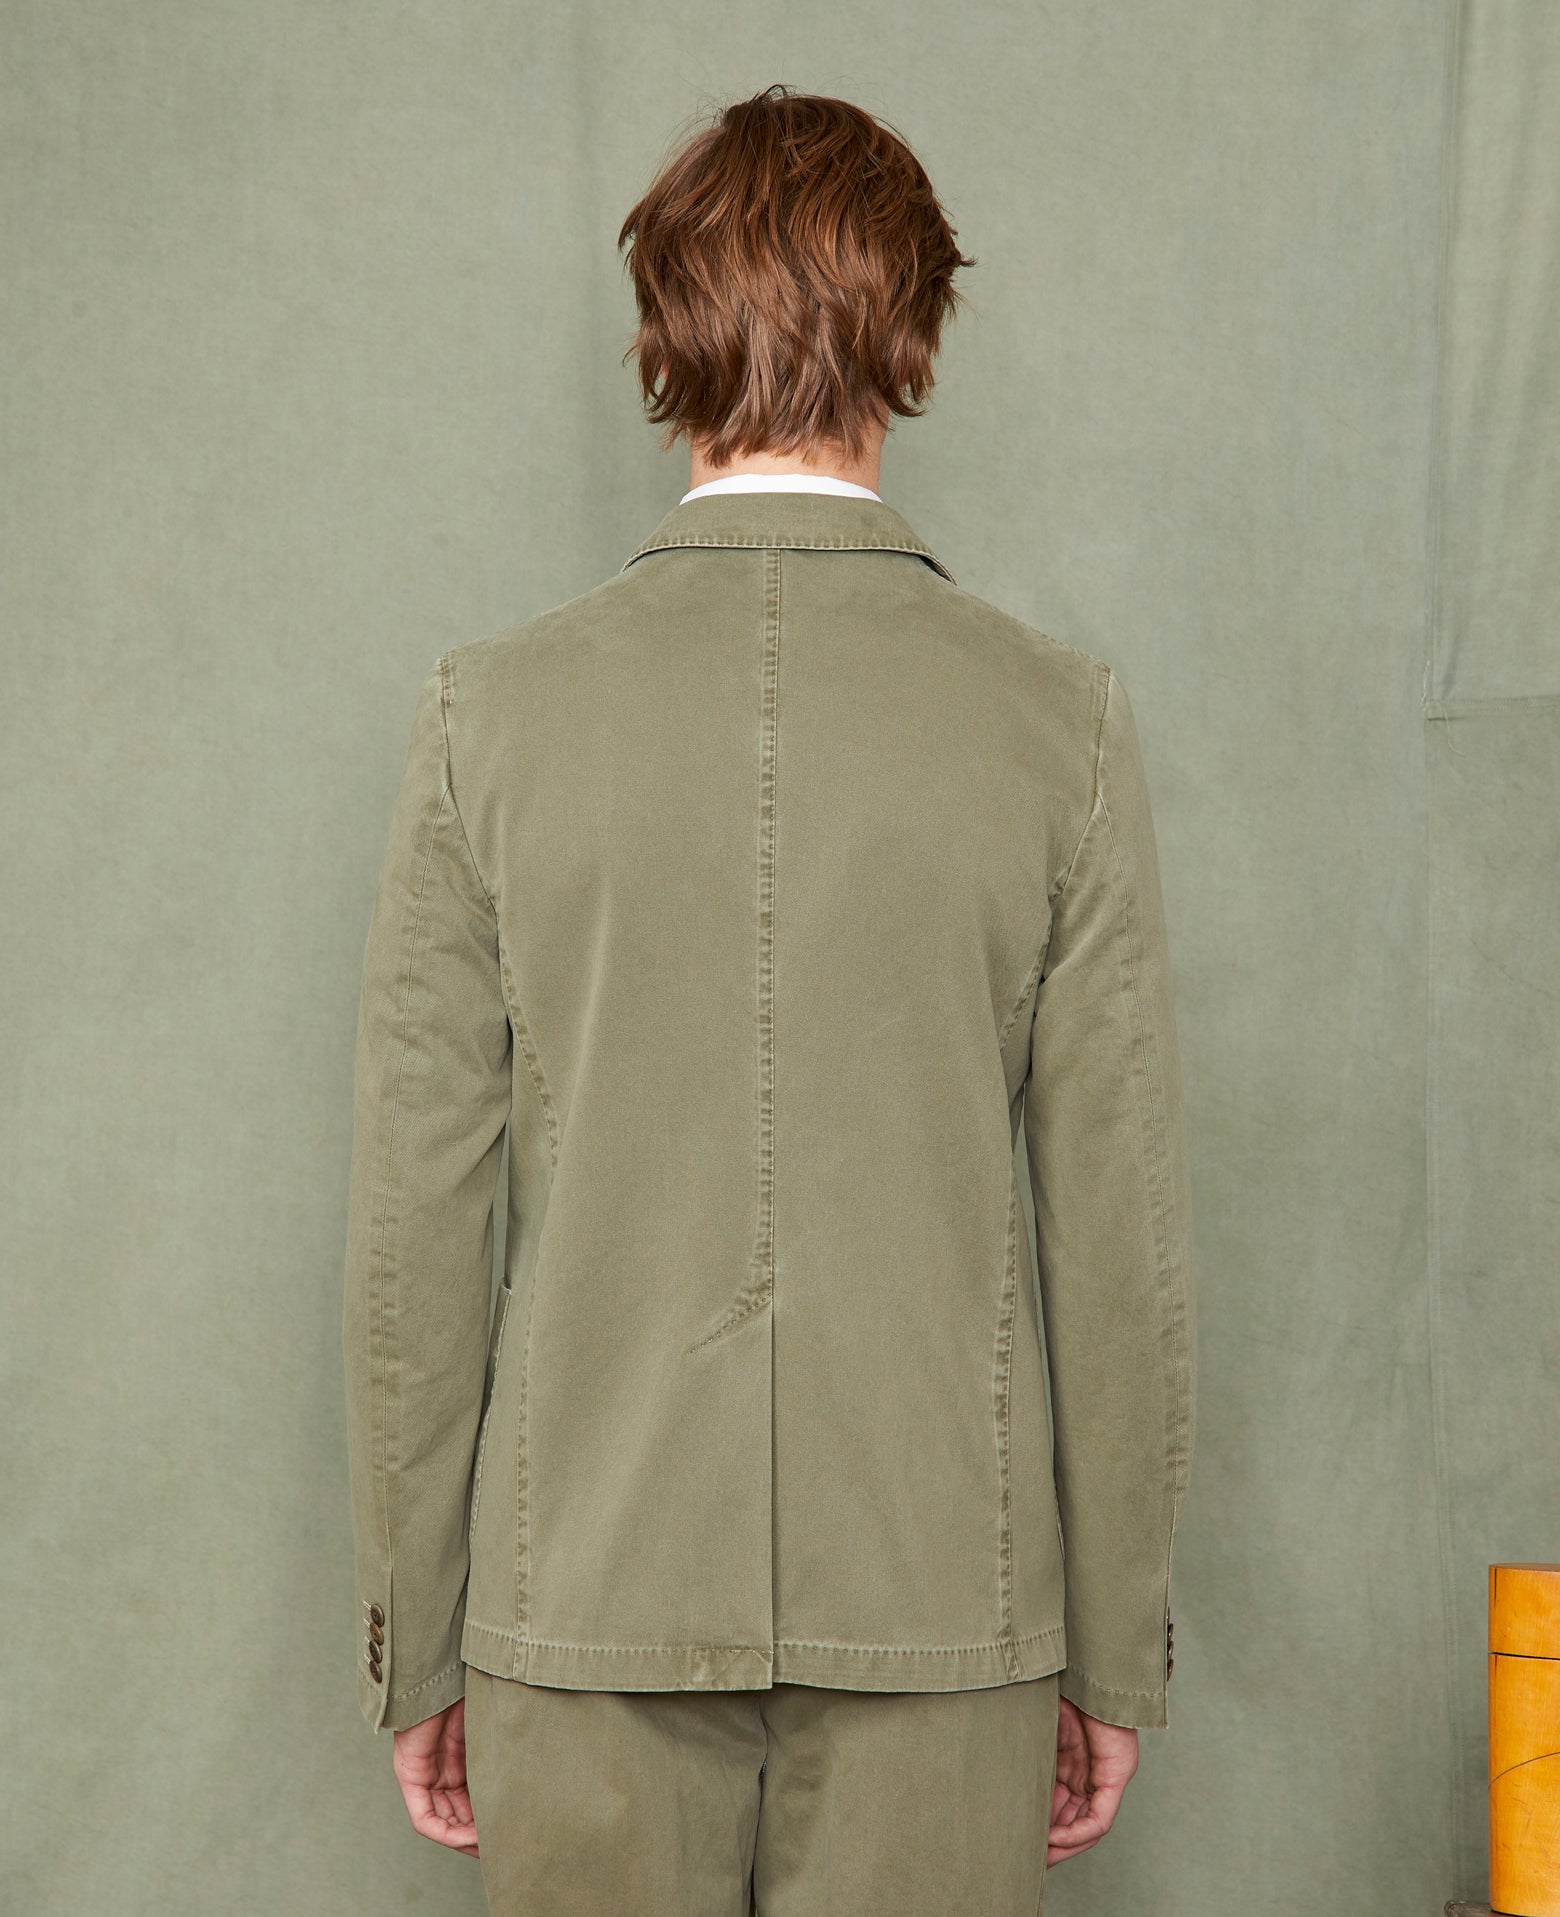 New lightest jacket OLIVE - Image 2